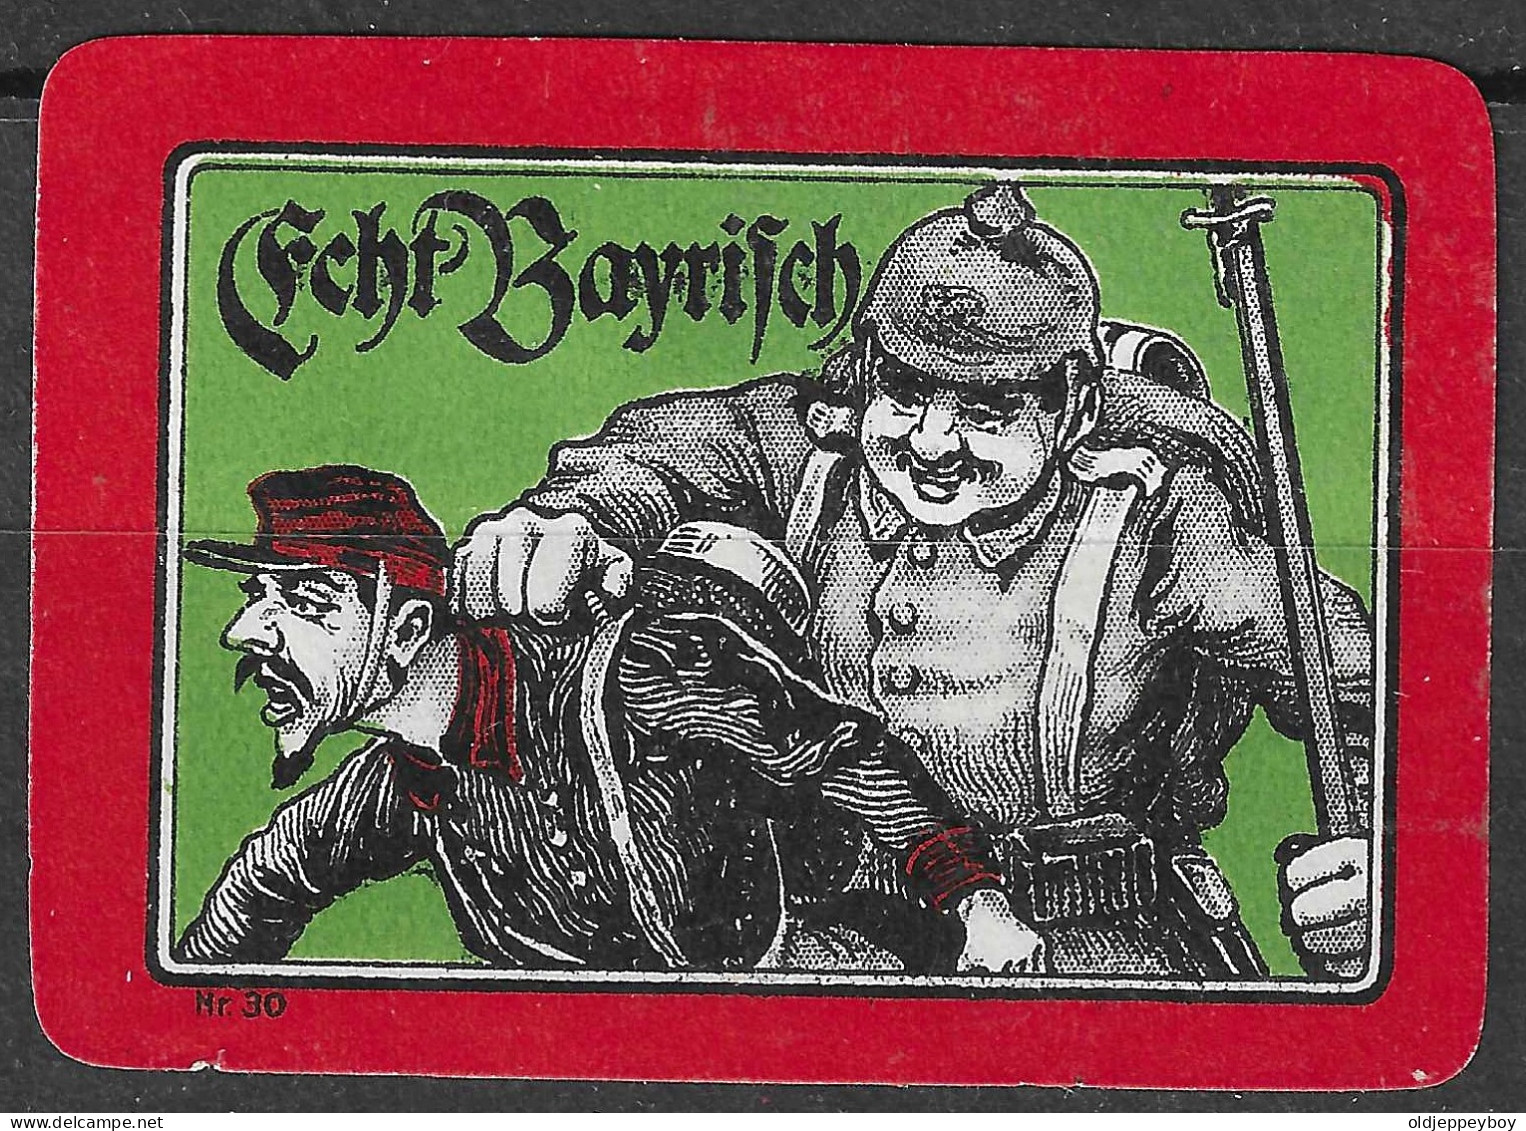 1914 DEUTSCHLAND WW1 GERMANY Propaganda Reklamemarke VIGNETTE Echt Bayrisch - 1. Weltkrieg